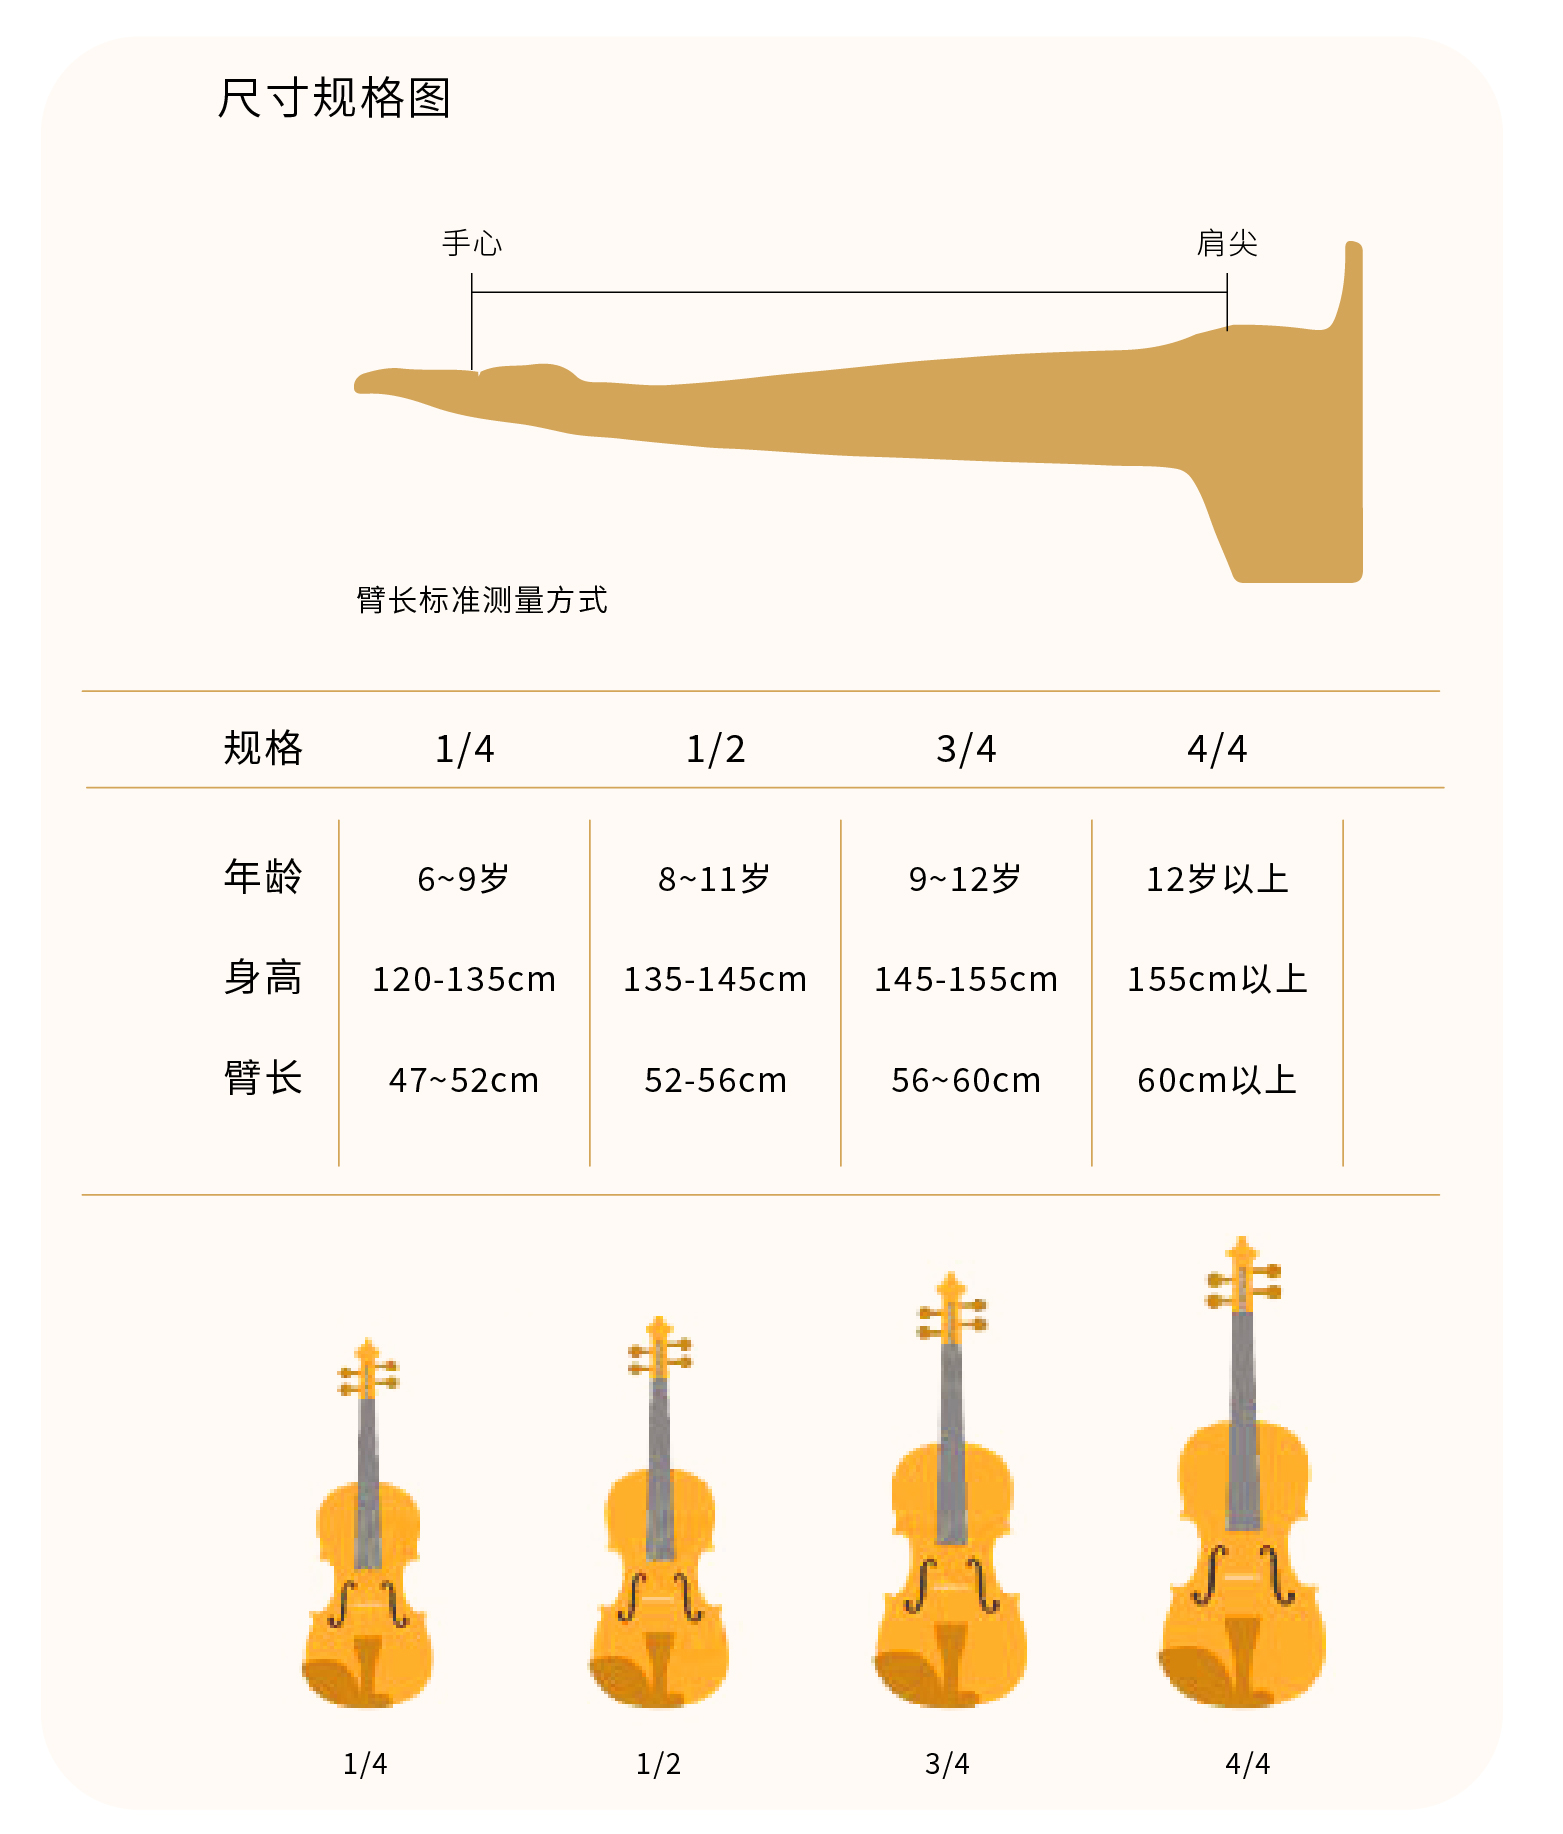 熙珑乐器专营店-详情-v1-2_SC200大提琴_复制_PC-副本-2_04.jpg